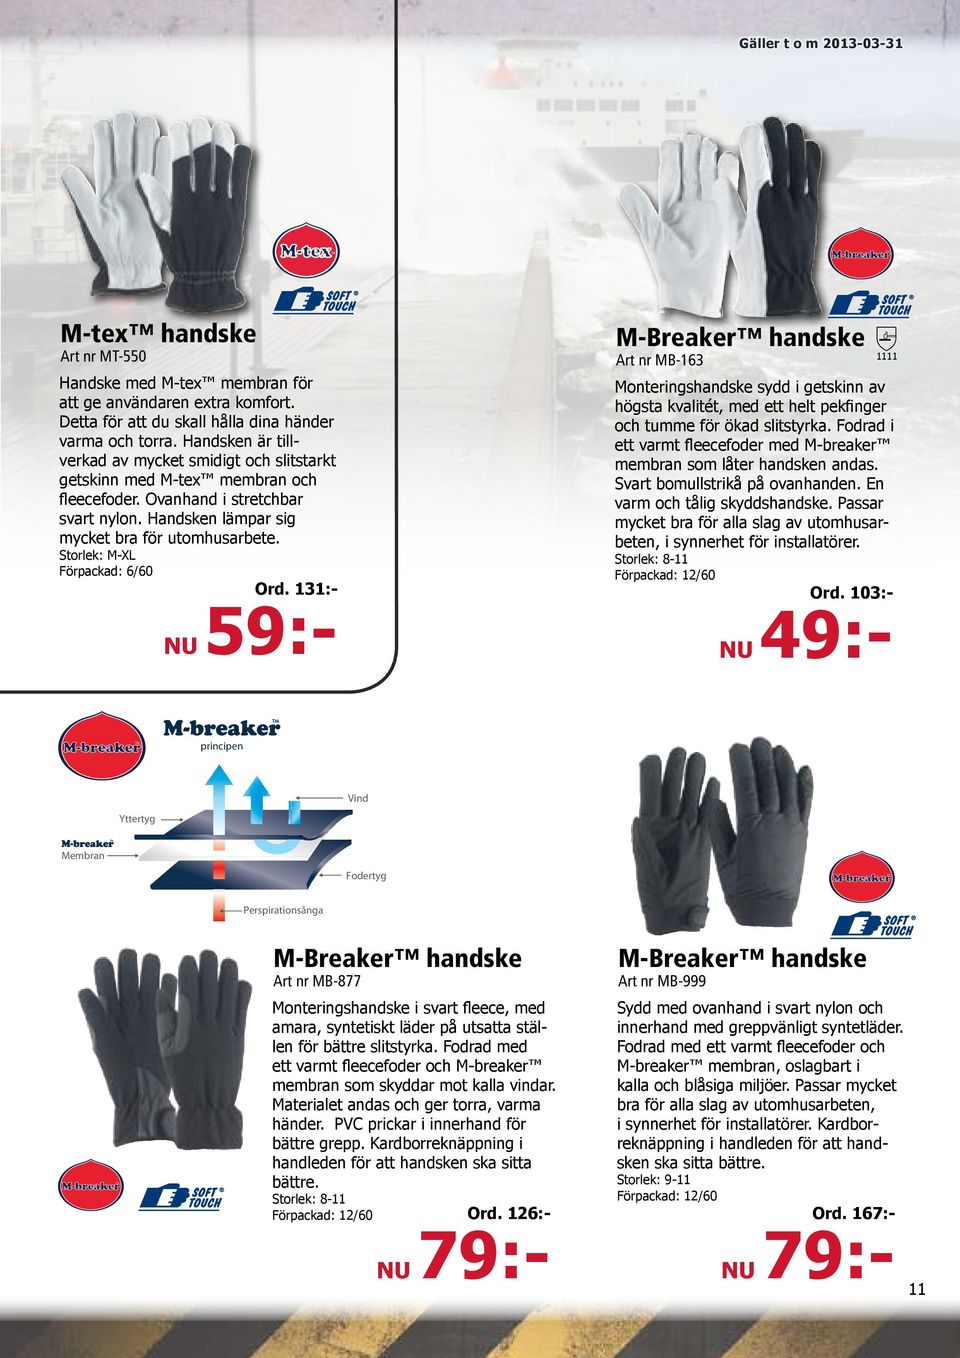 Storlek: M-XL Förpackad: 6/60 M-Breaker handske Art nr MB-163 Monteringshandske sydd i getskinn av högsta kvalitét, med ett helt pekfinger och tumme för ökad slitstyrka.